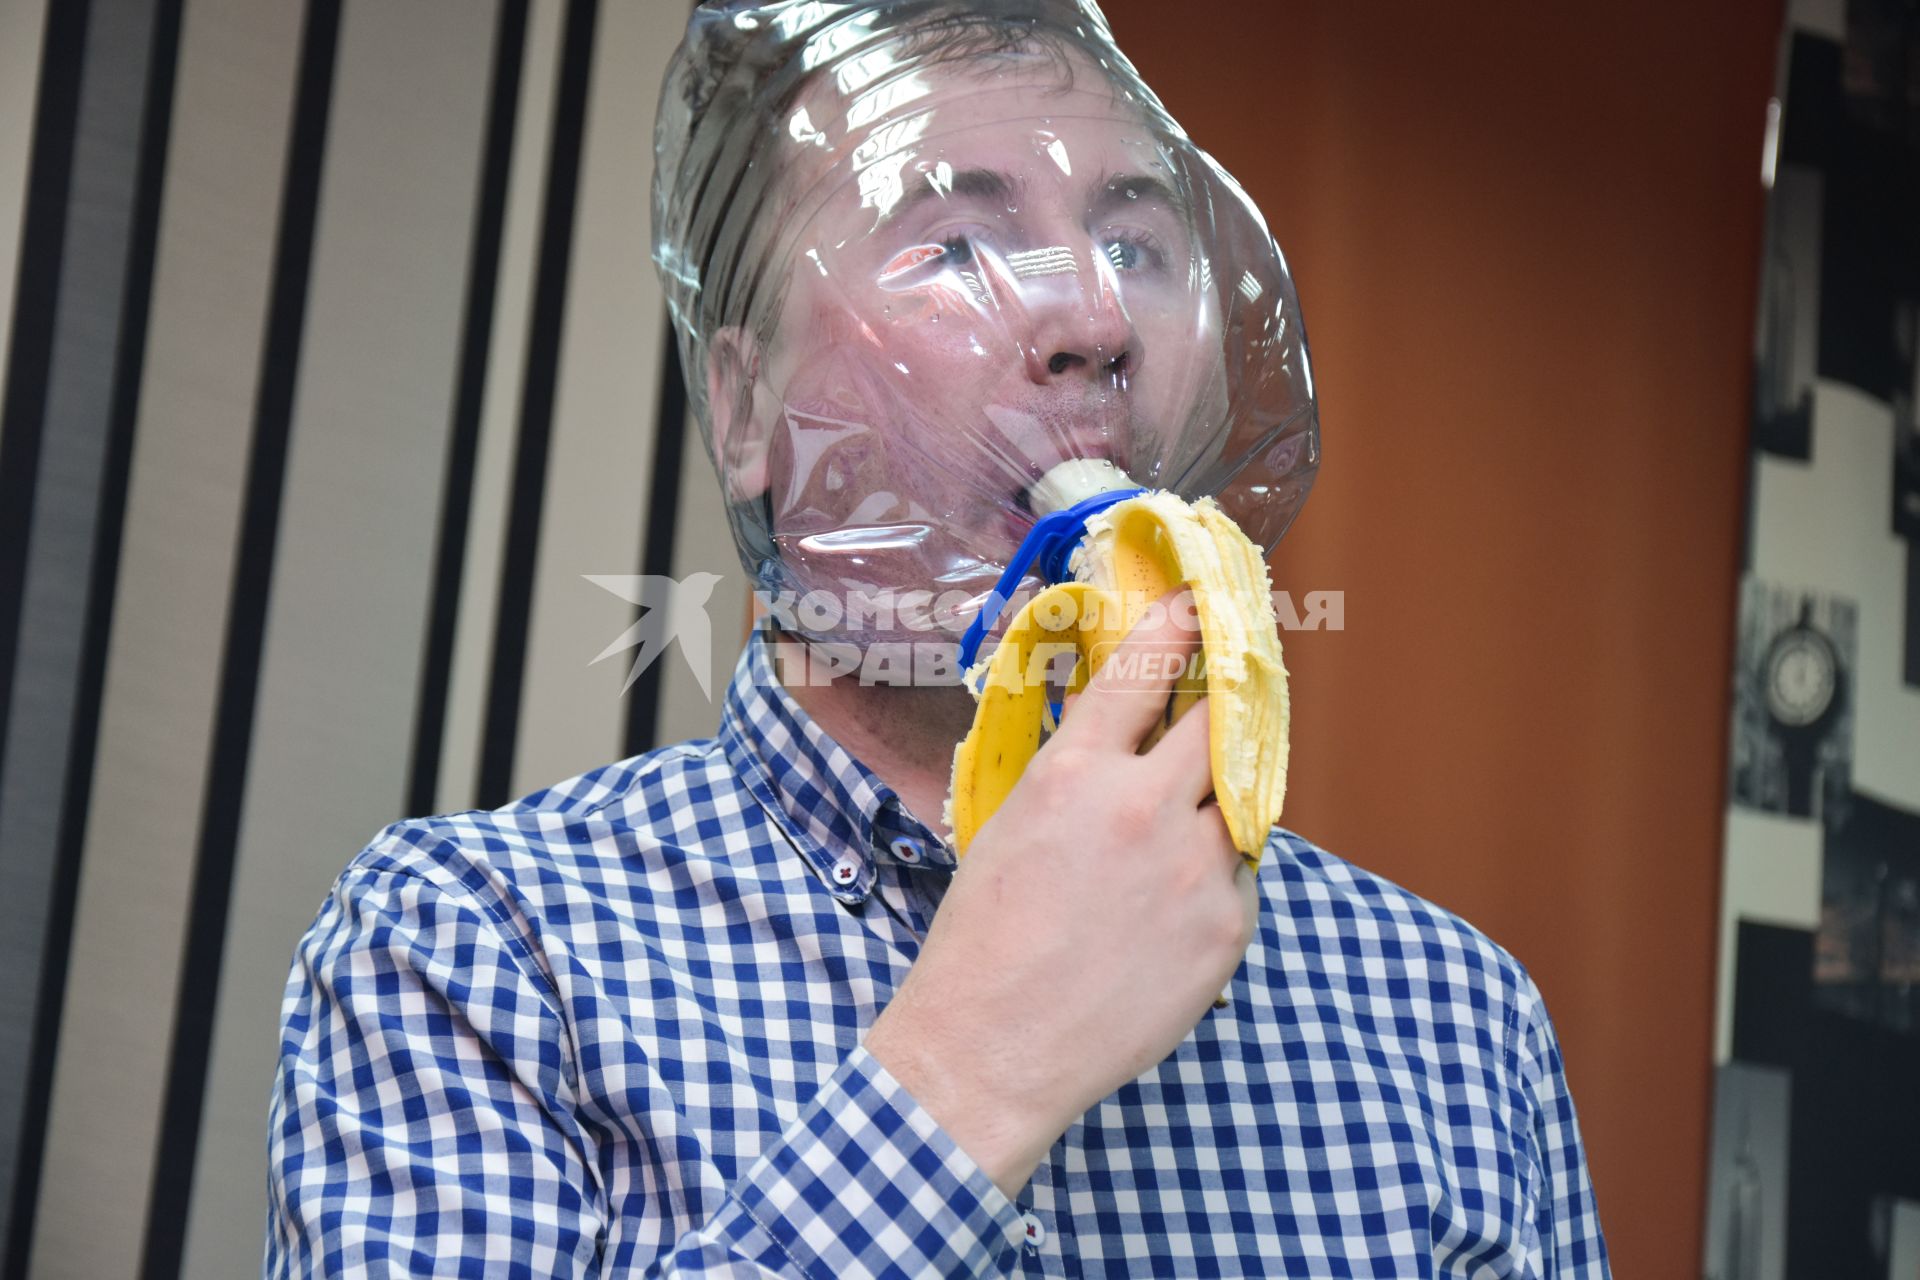 Новосибирск. Мужчина в самодельной защитной маске во время пандемии коронавируса COVID-19.